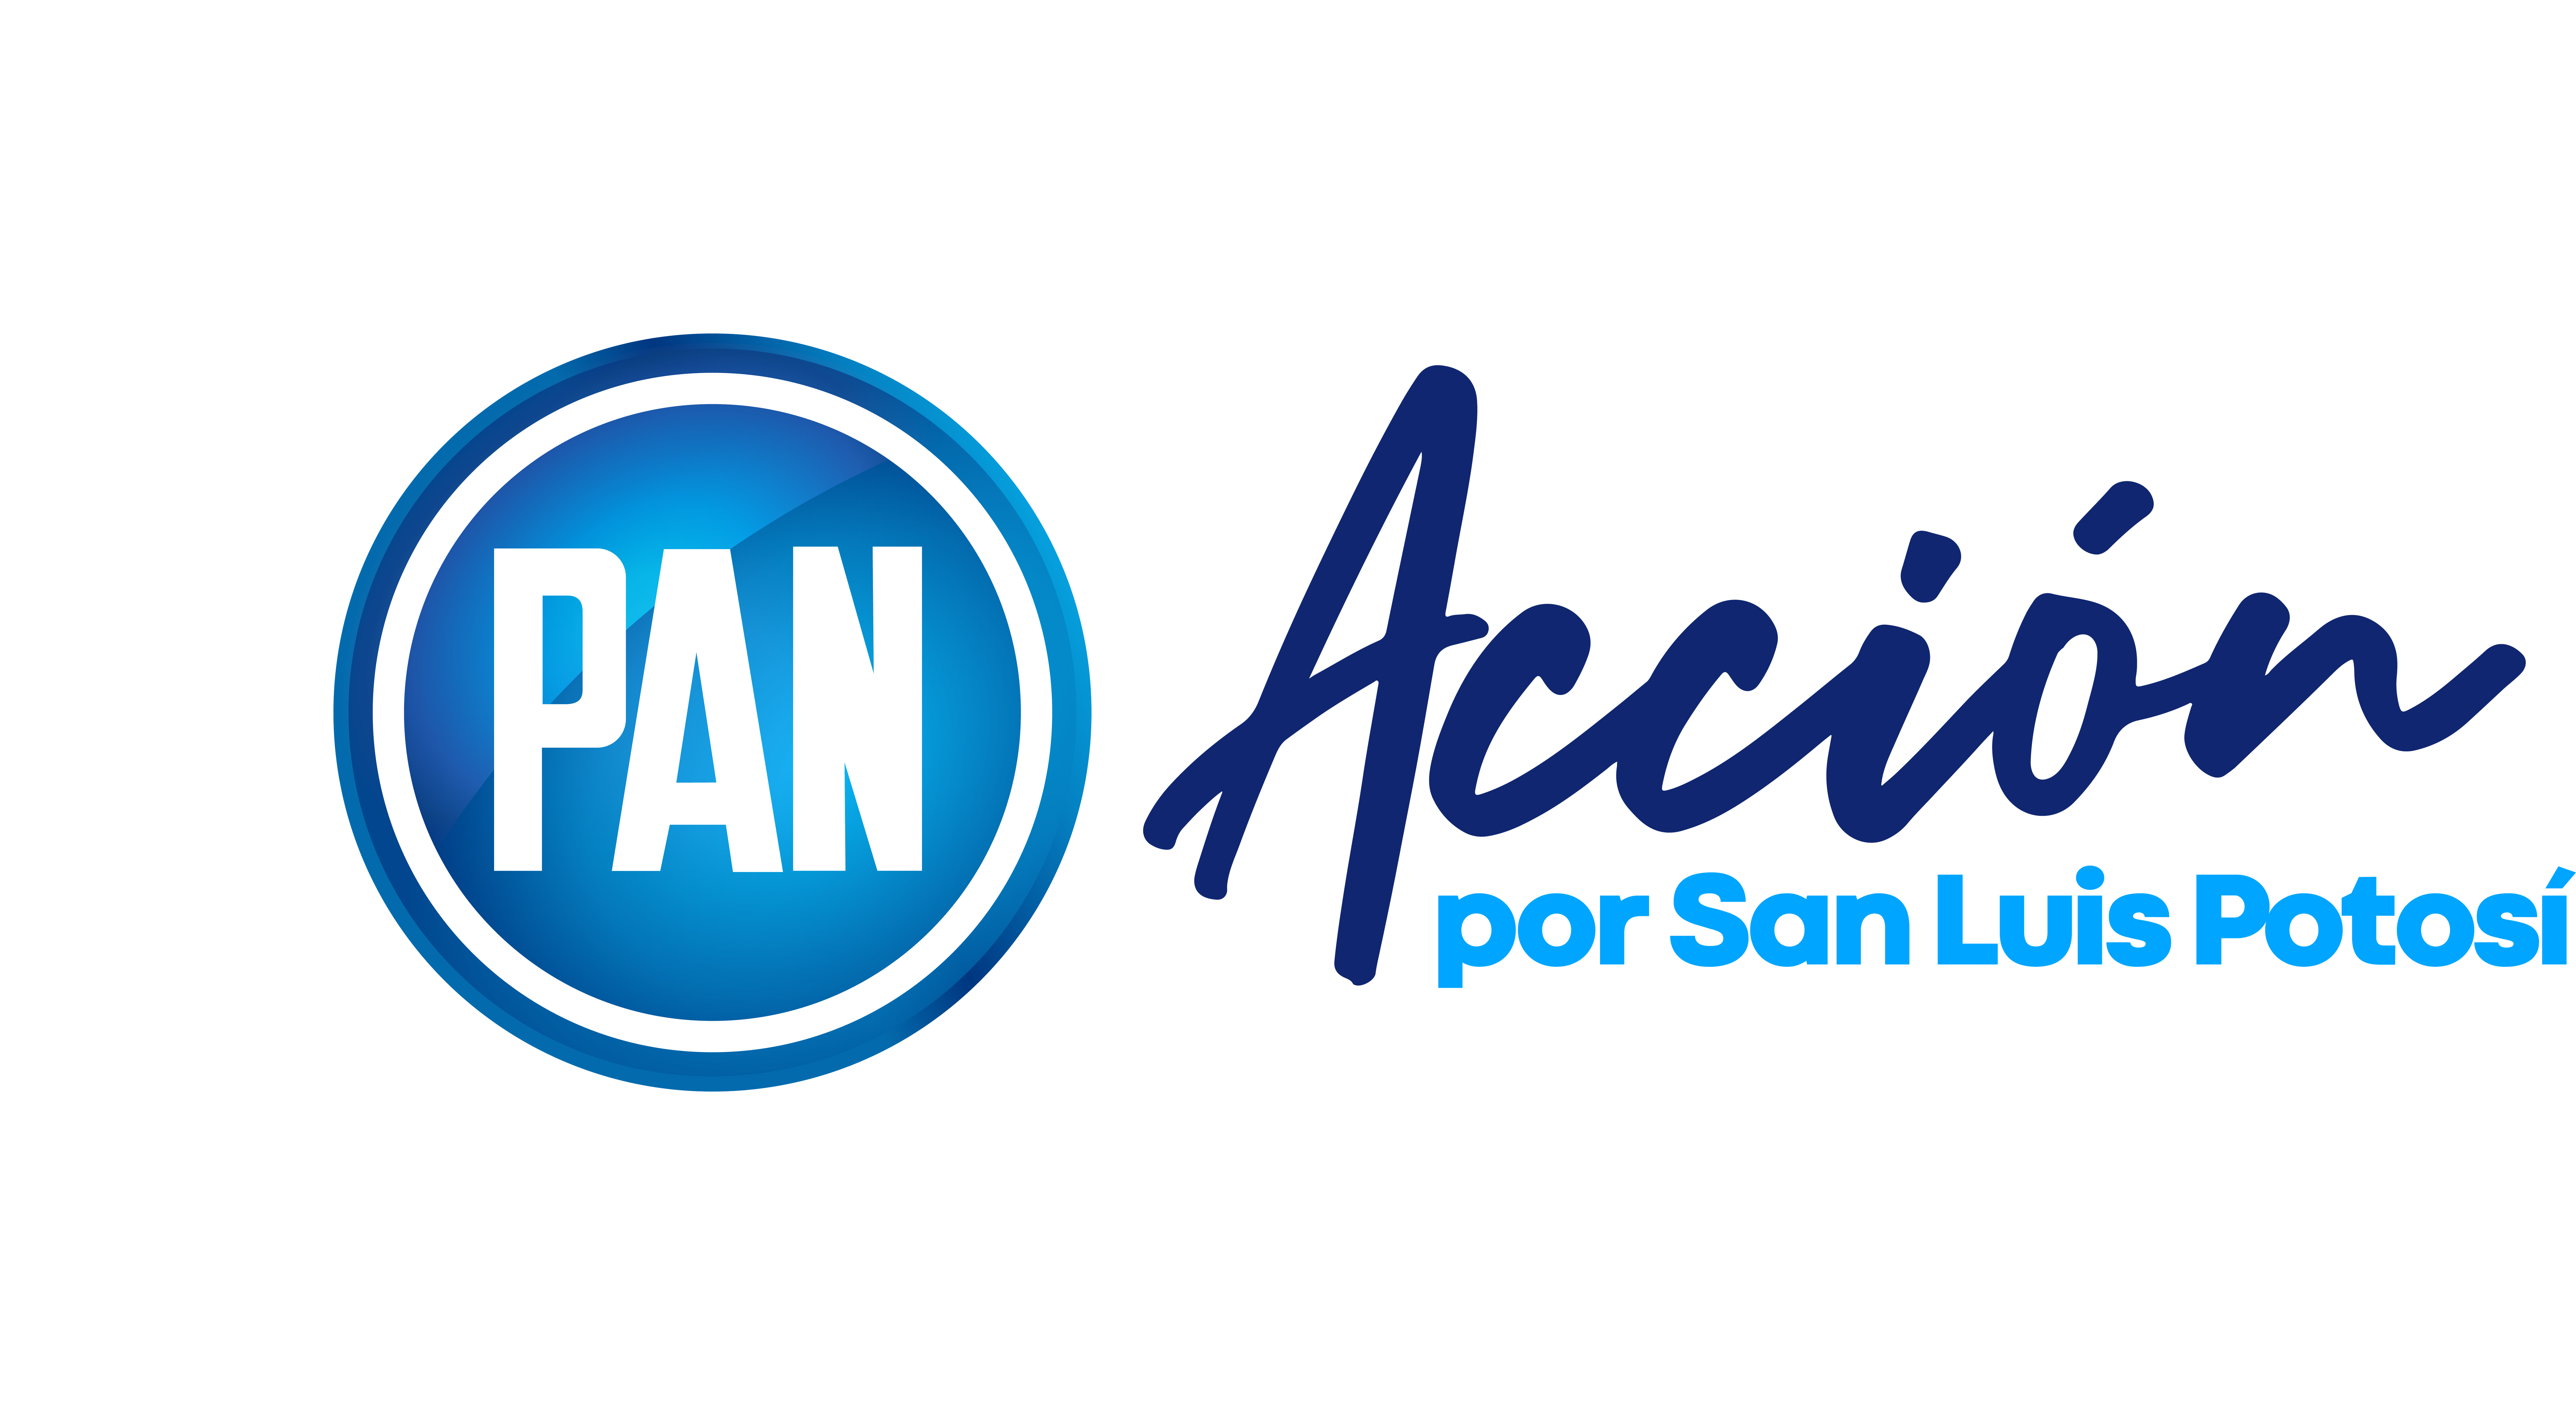 PAN Acción por San Luis Potosí